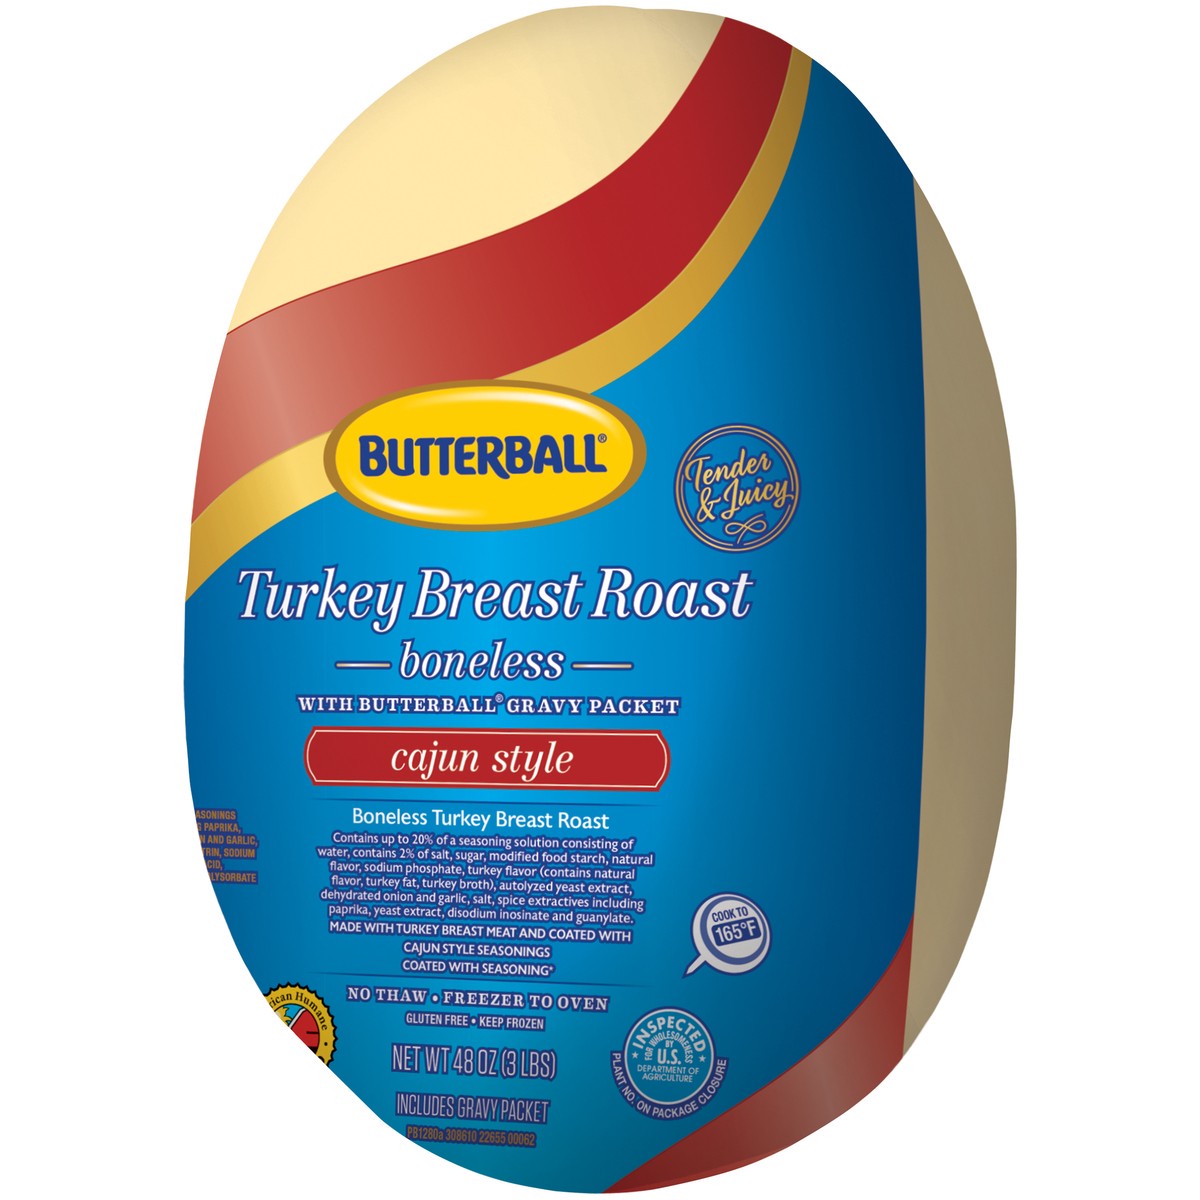 slide 7 of 9, Butterball Turkey Breast Roast, Cajun, Boneless with Gravy Pack, Frozen, 48 oz